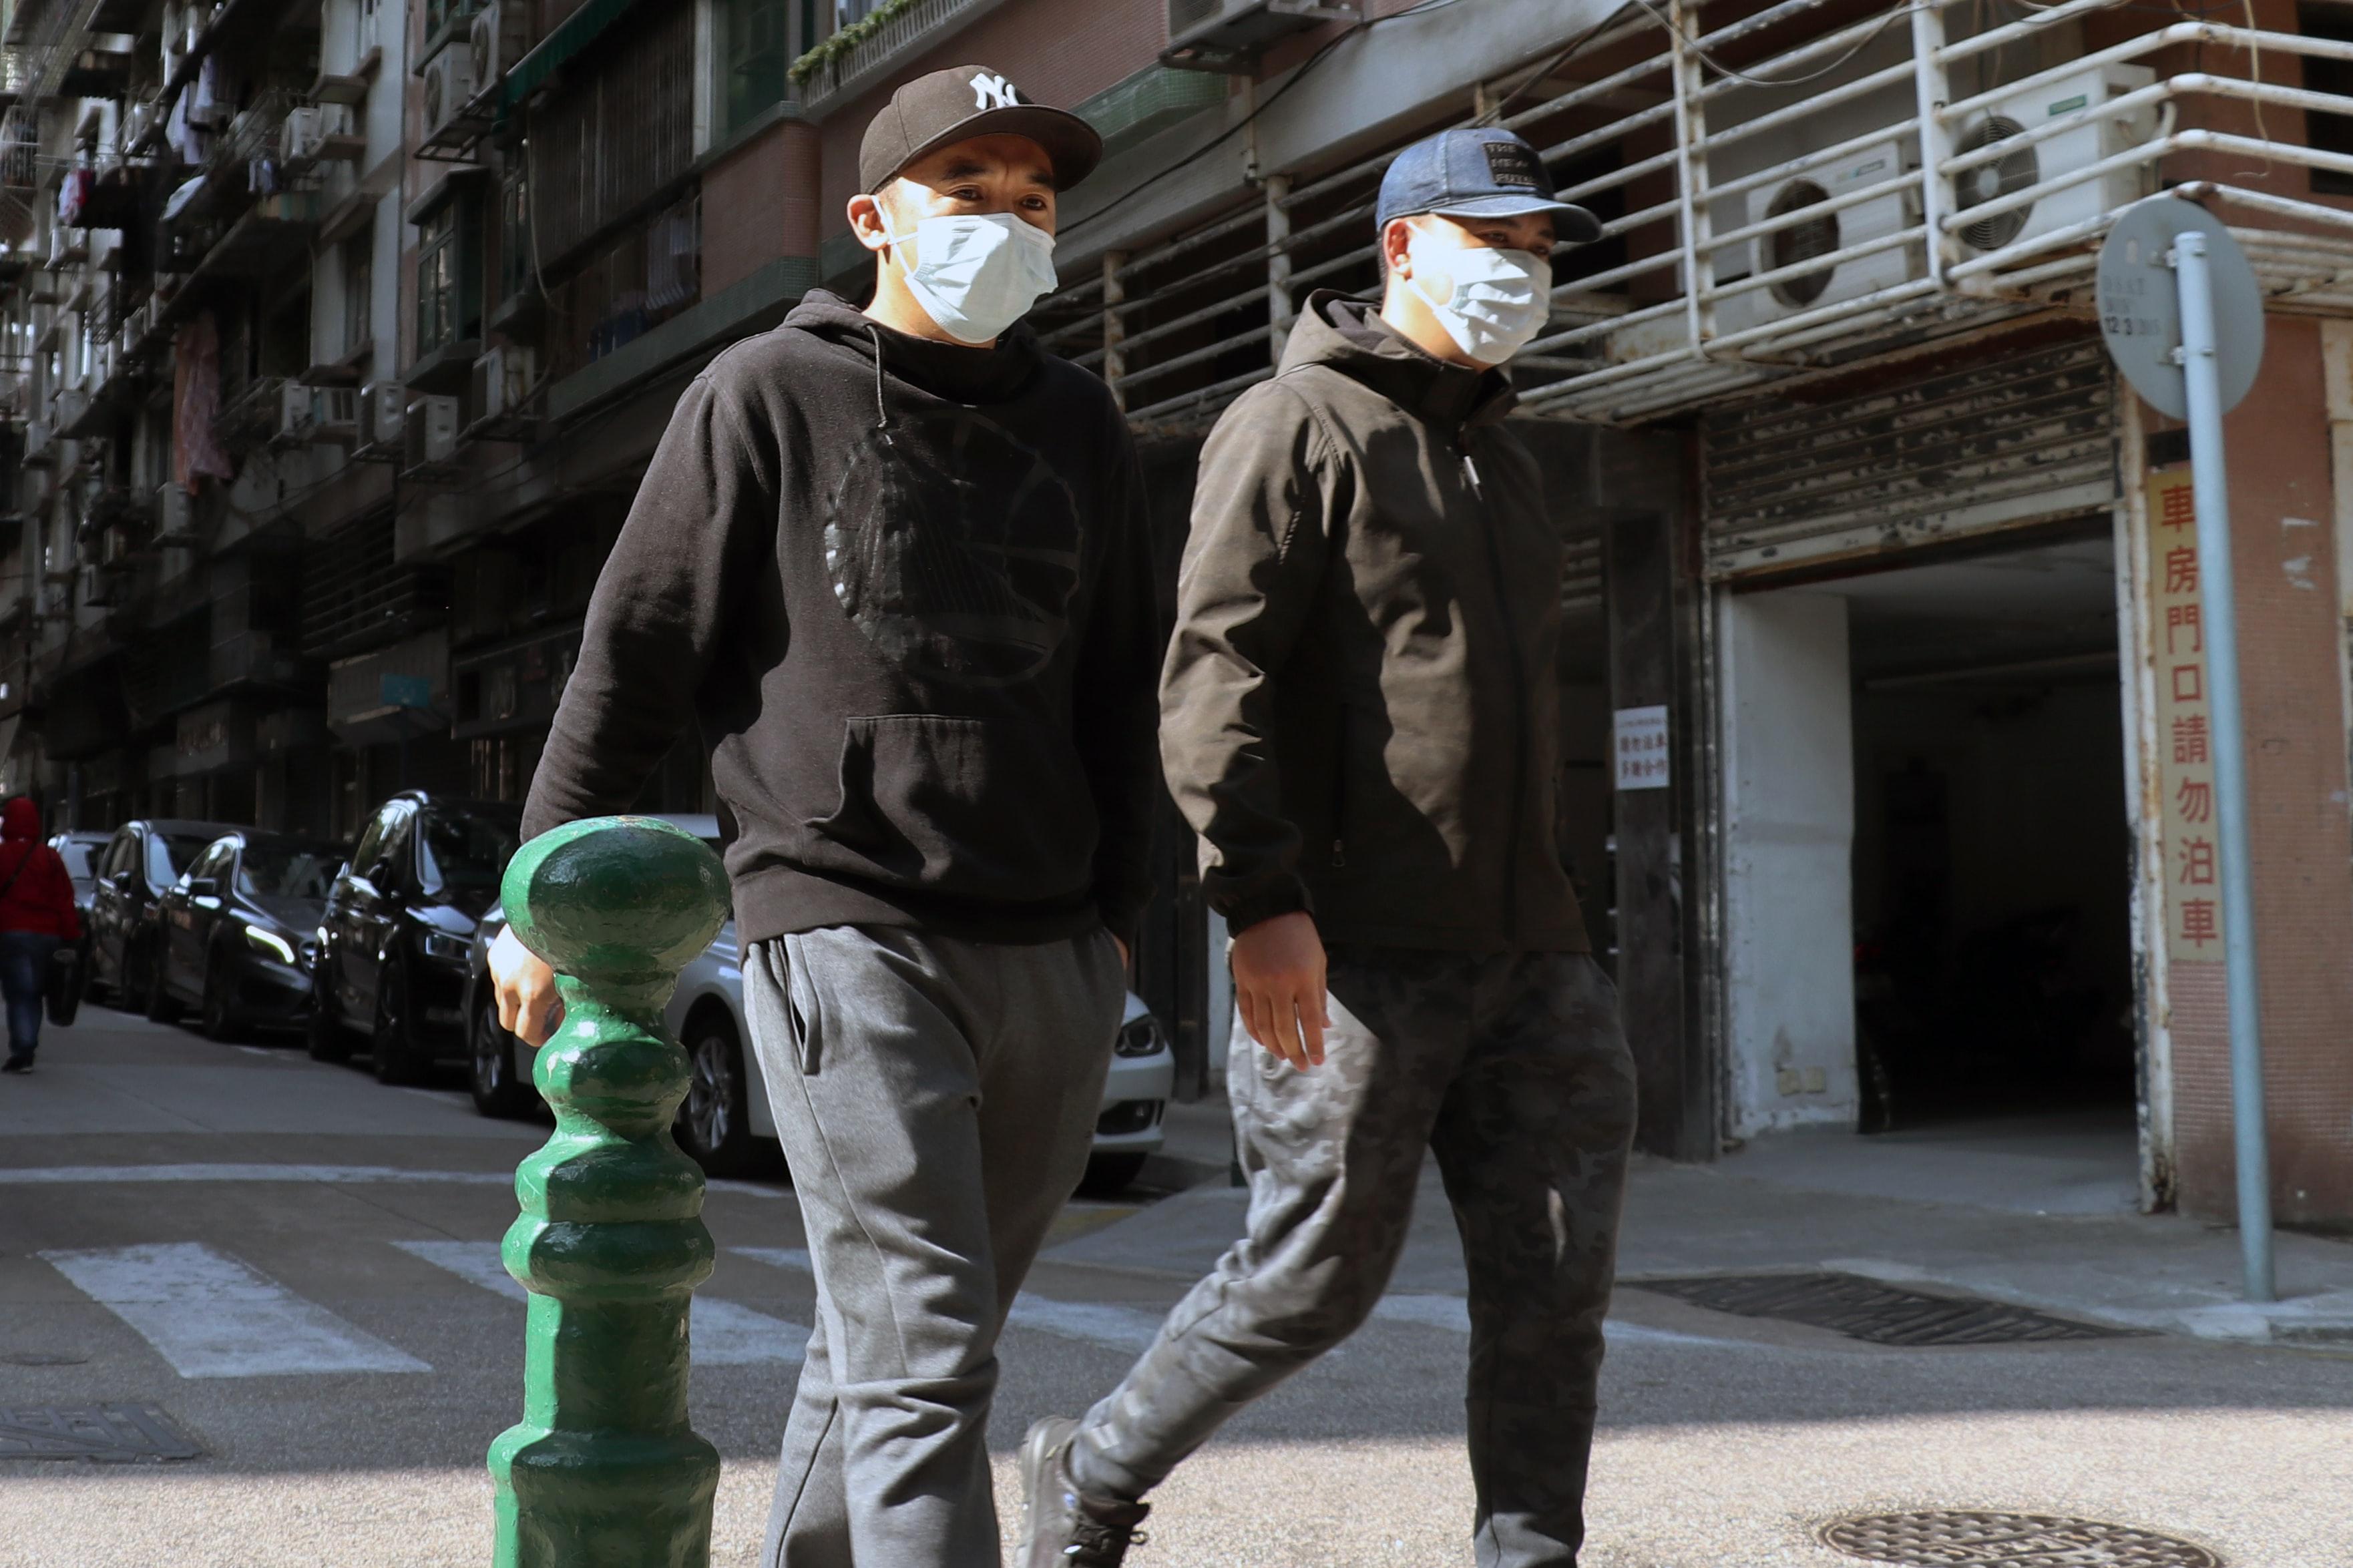 Dos personas con mascarillas. Macau Photo Agency para Unsplash